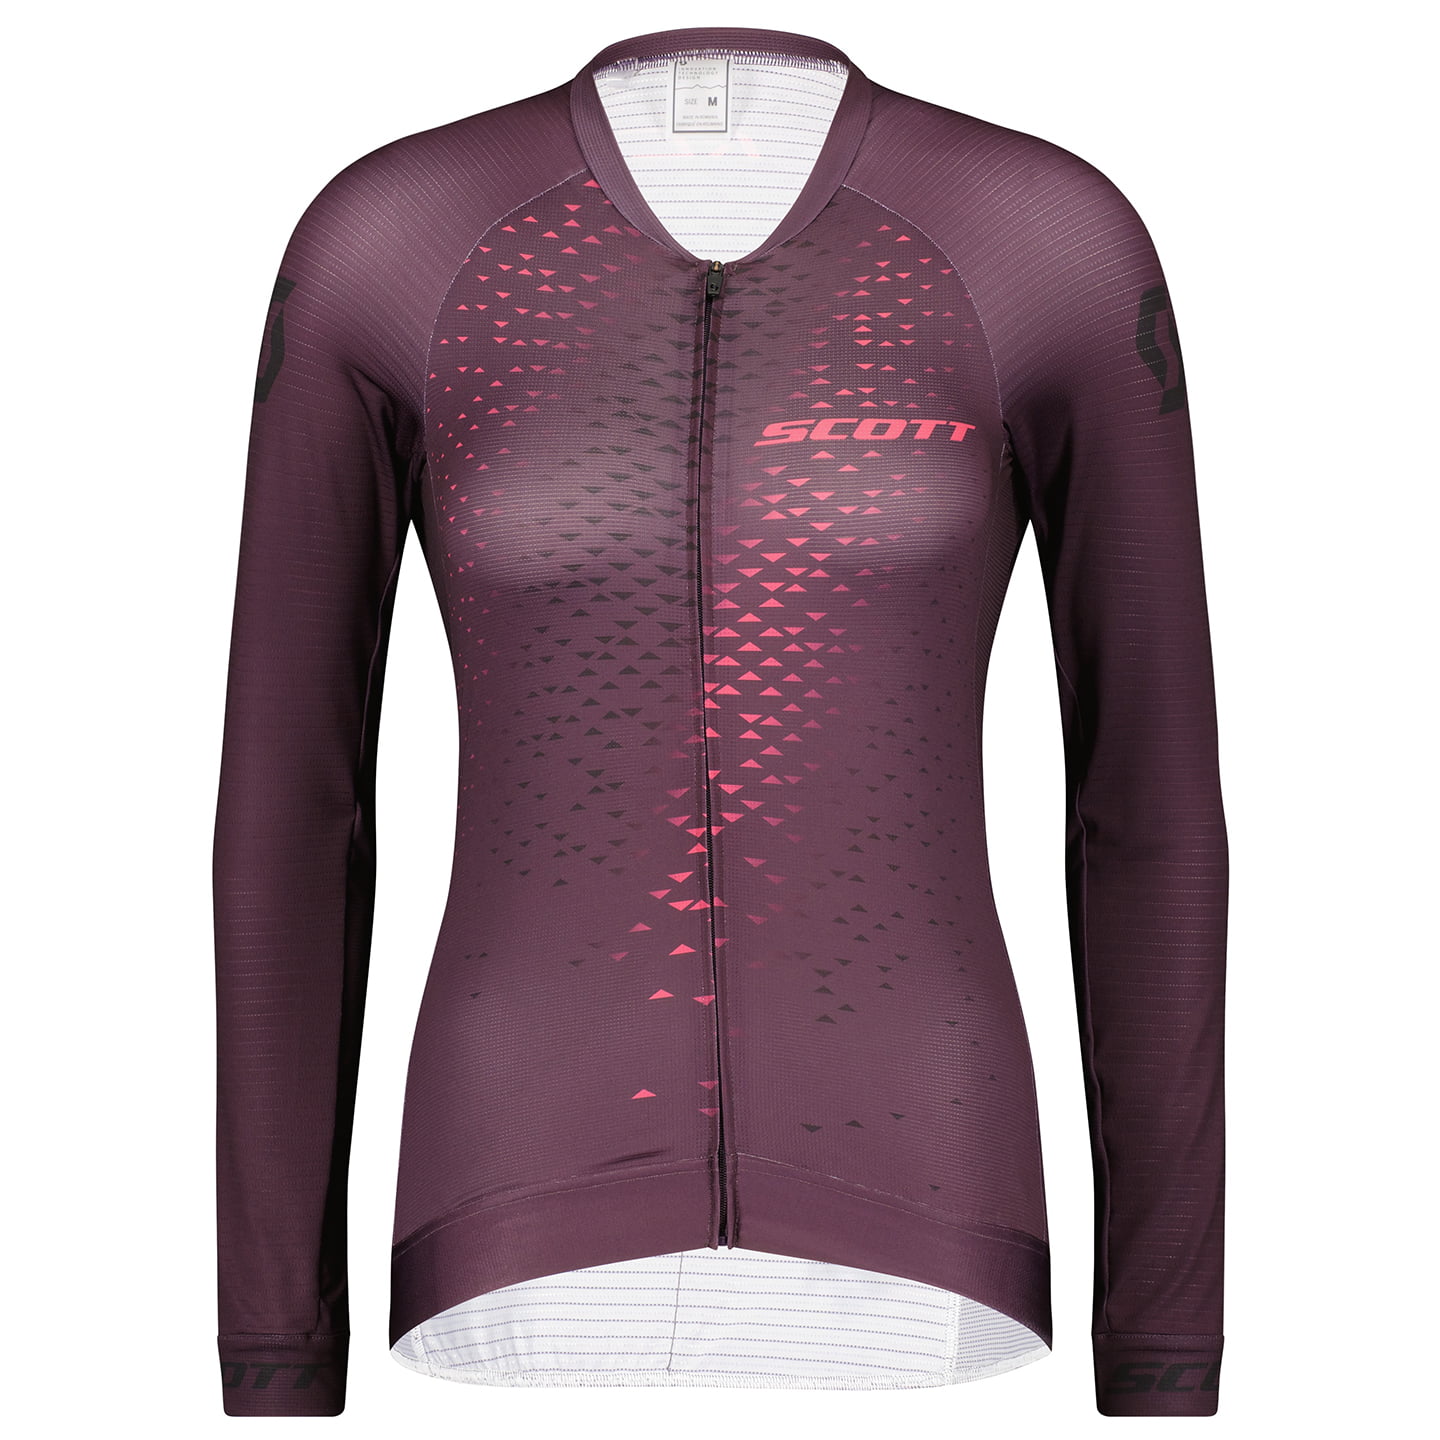 SCOTT RC Pro Women’s Long Sleeve Jersey Women’s Long Sleeve Jersey, size L, Cycling jersey, Cycling clothing